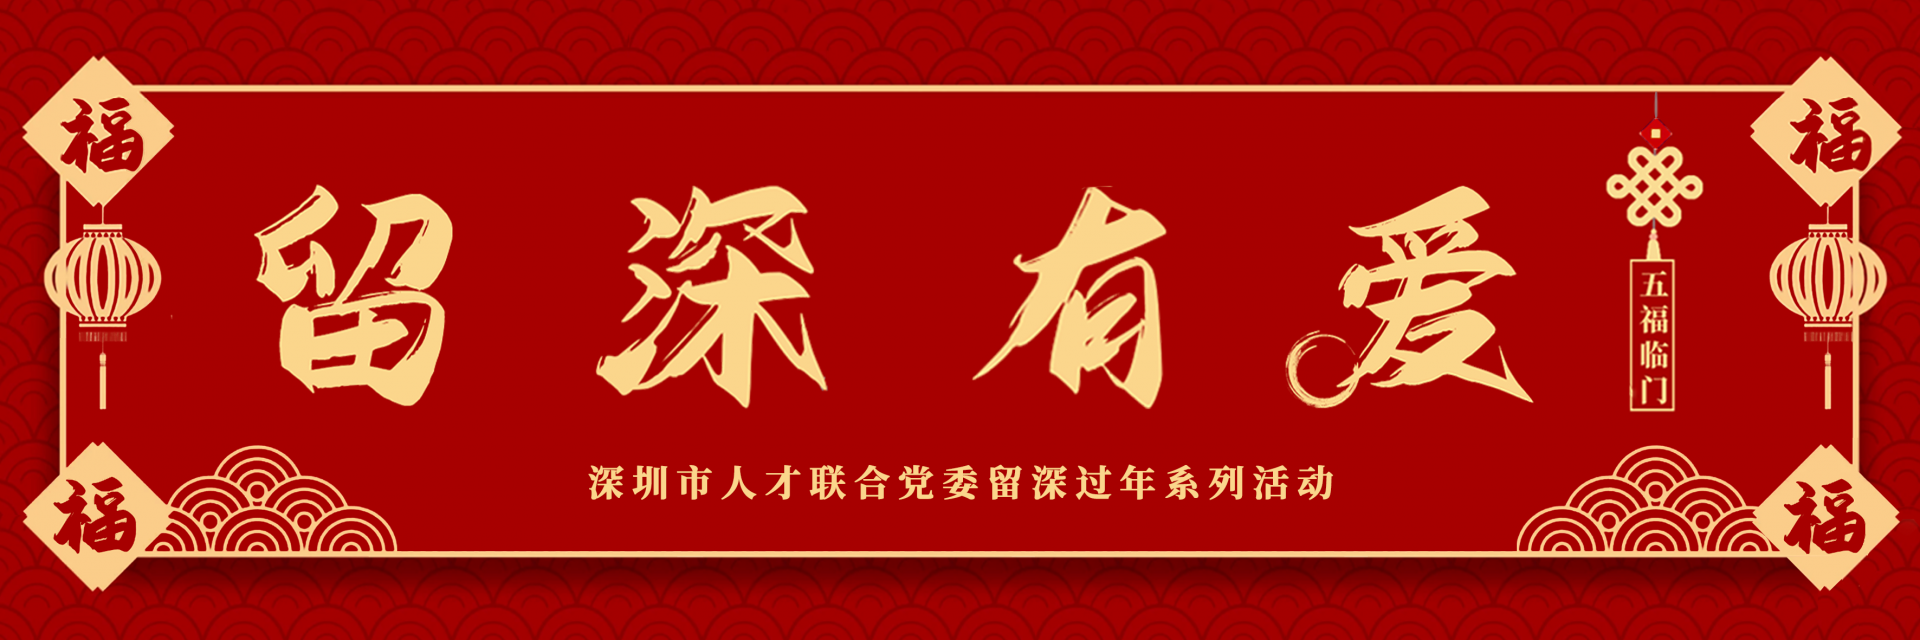 深圳市人才联合党委发出倡议：留深过年，党员带头！